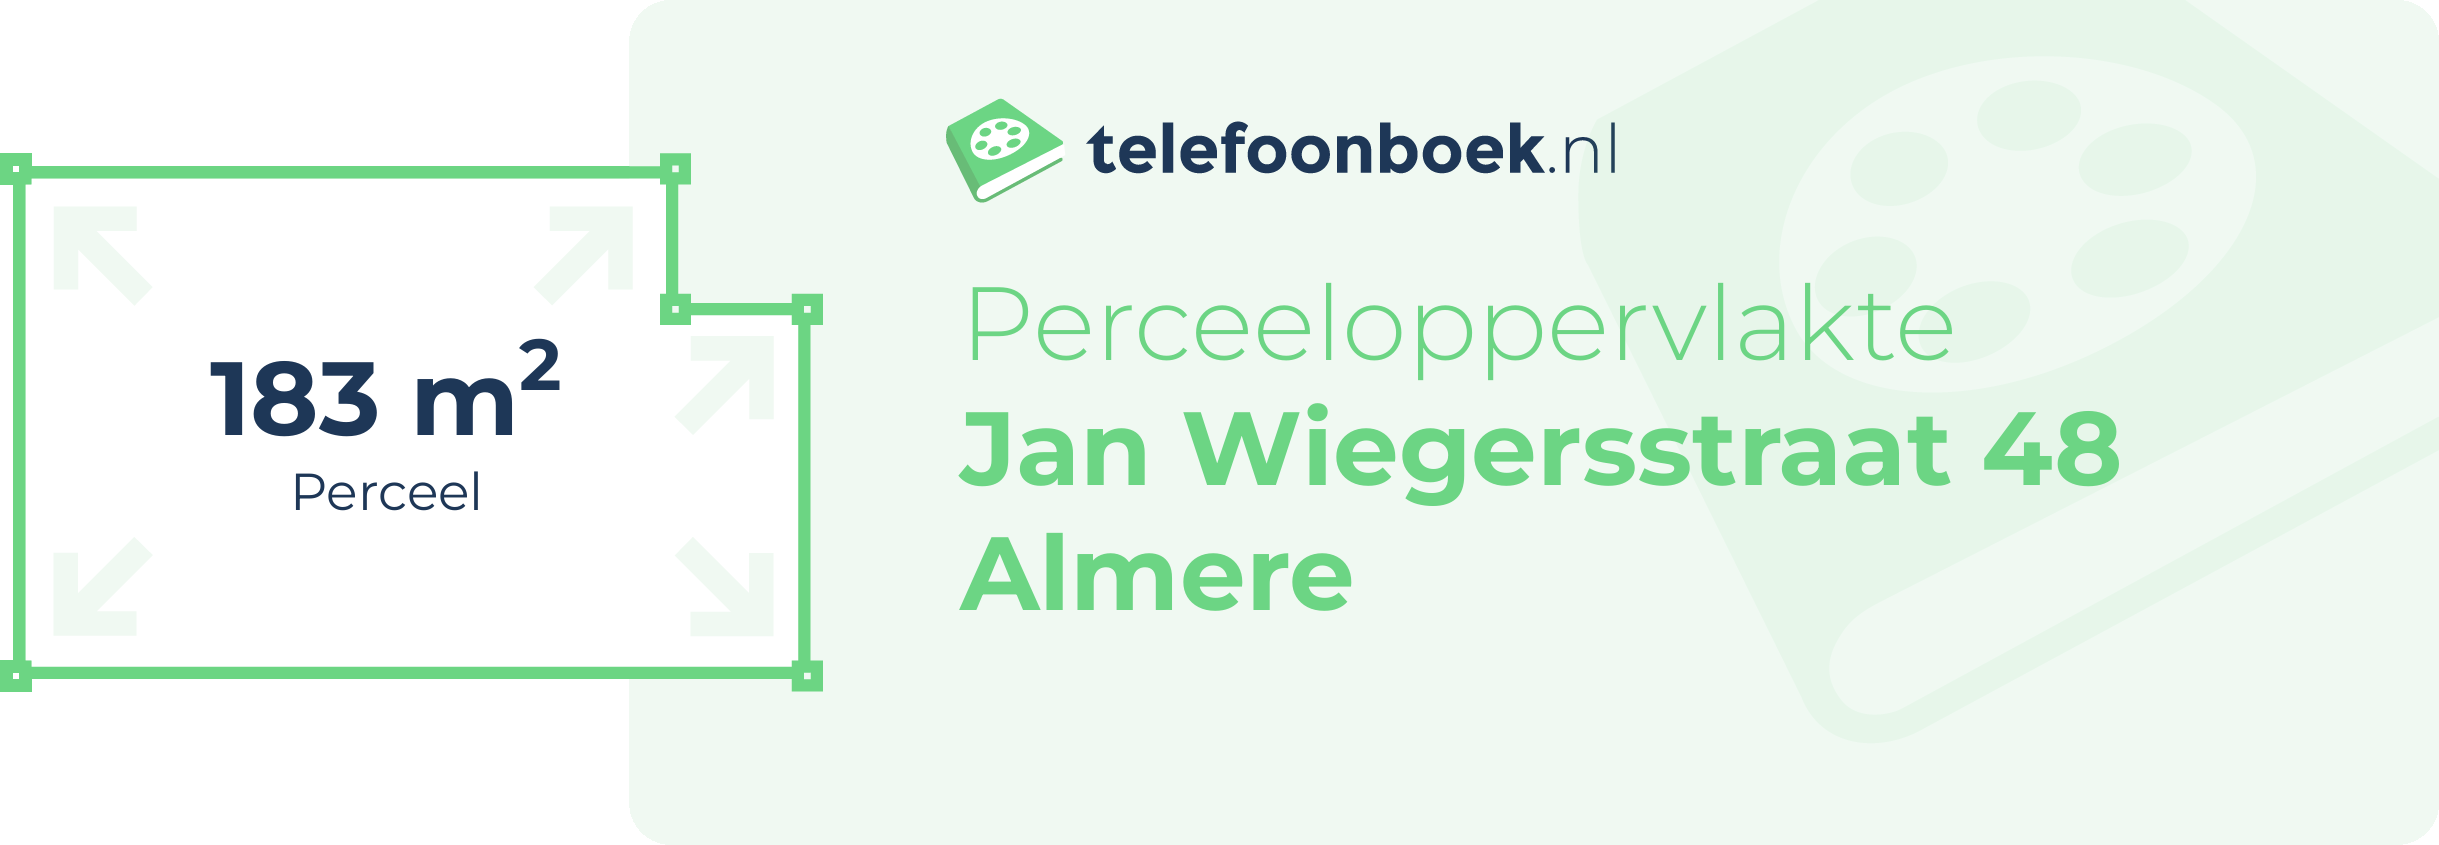 Perceeloppervlakte Jan Wiegersstraat 48 Almere